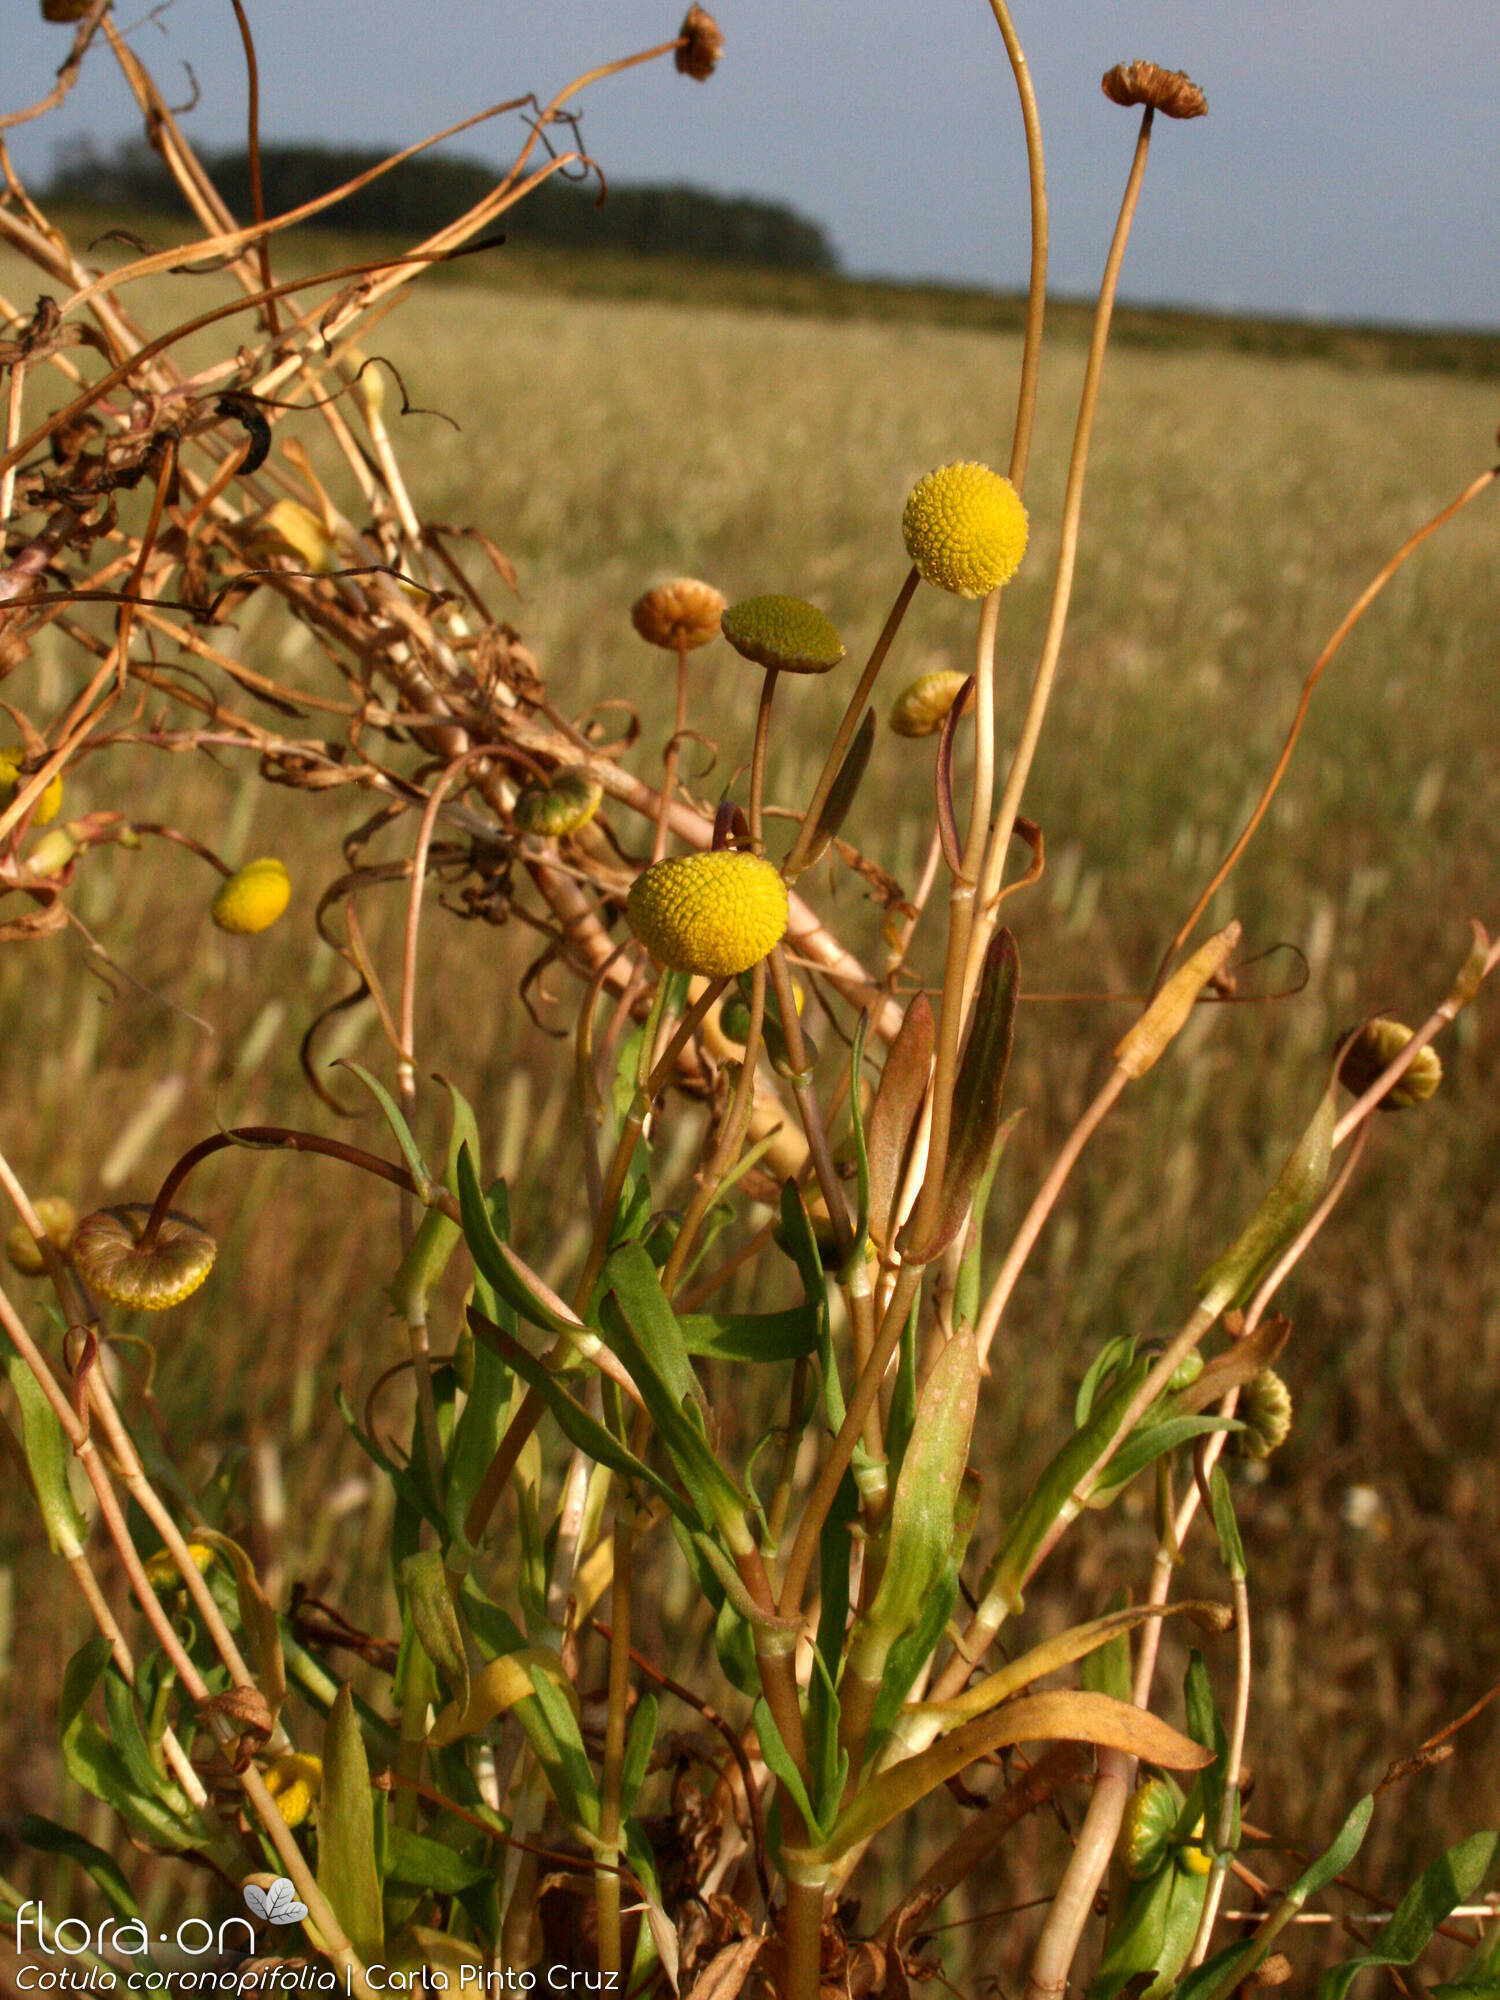 Cotula coronopifolia - Hábito | Carla Pinto Cruz; CC BY-NC 4.0